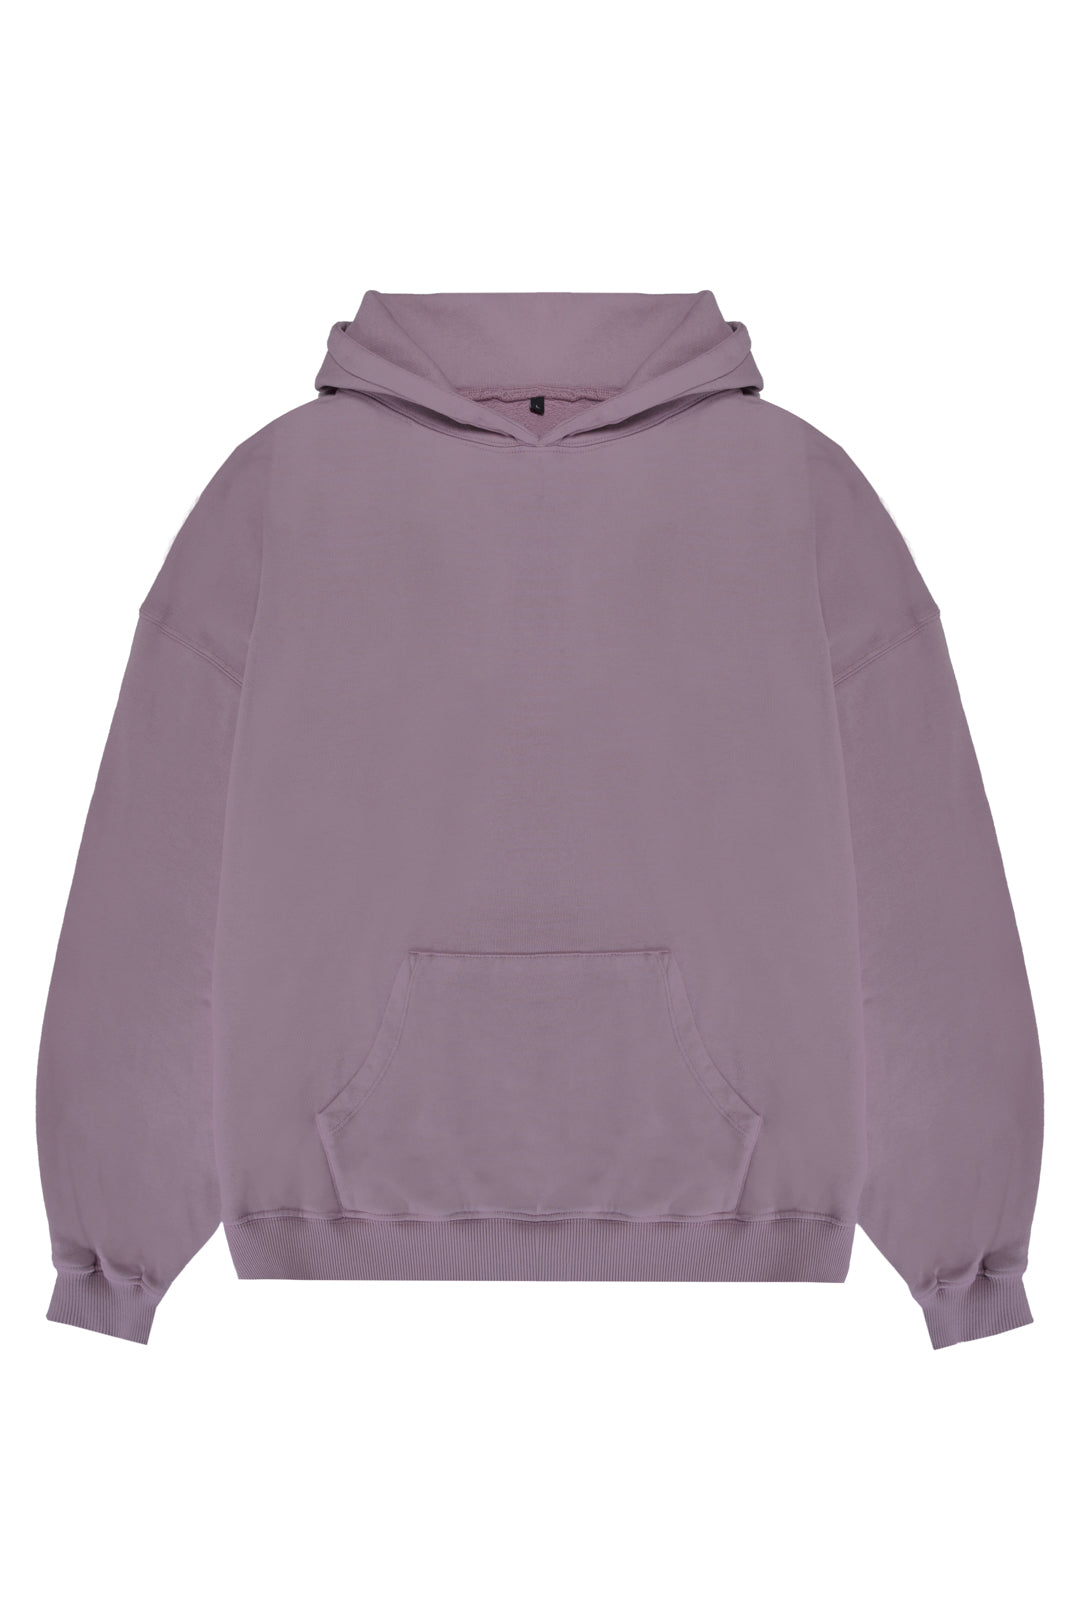 Oversized Sweatshirt 320 gsm - Elderberry